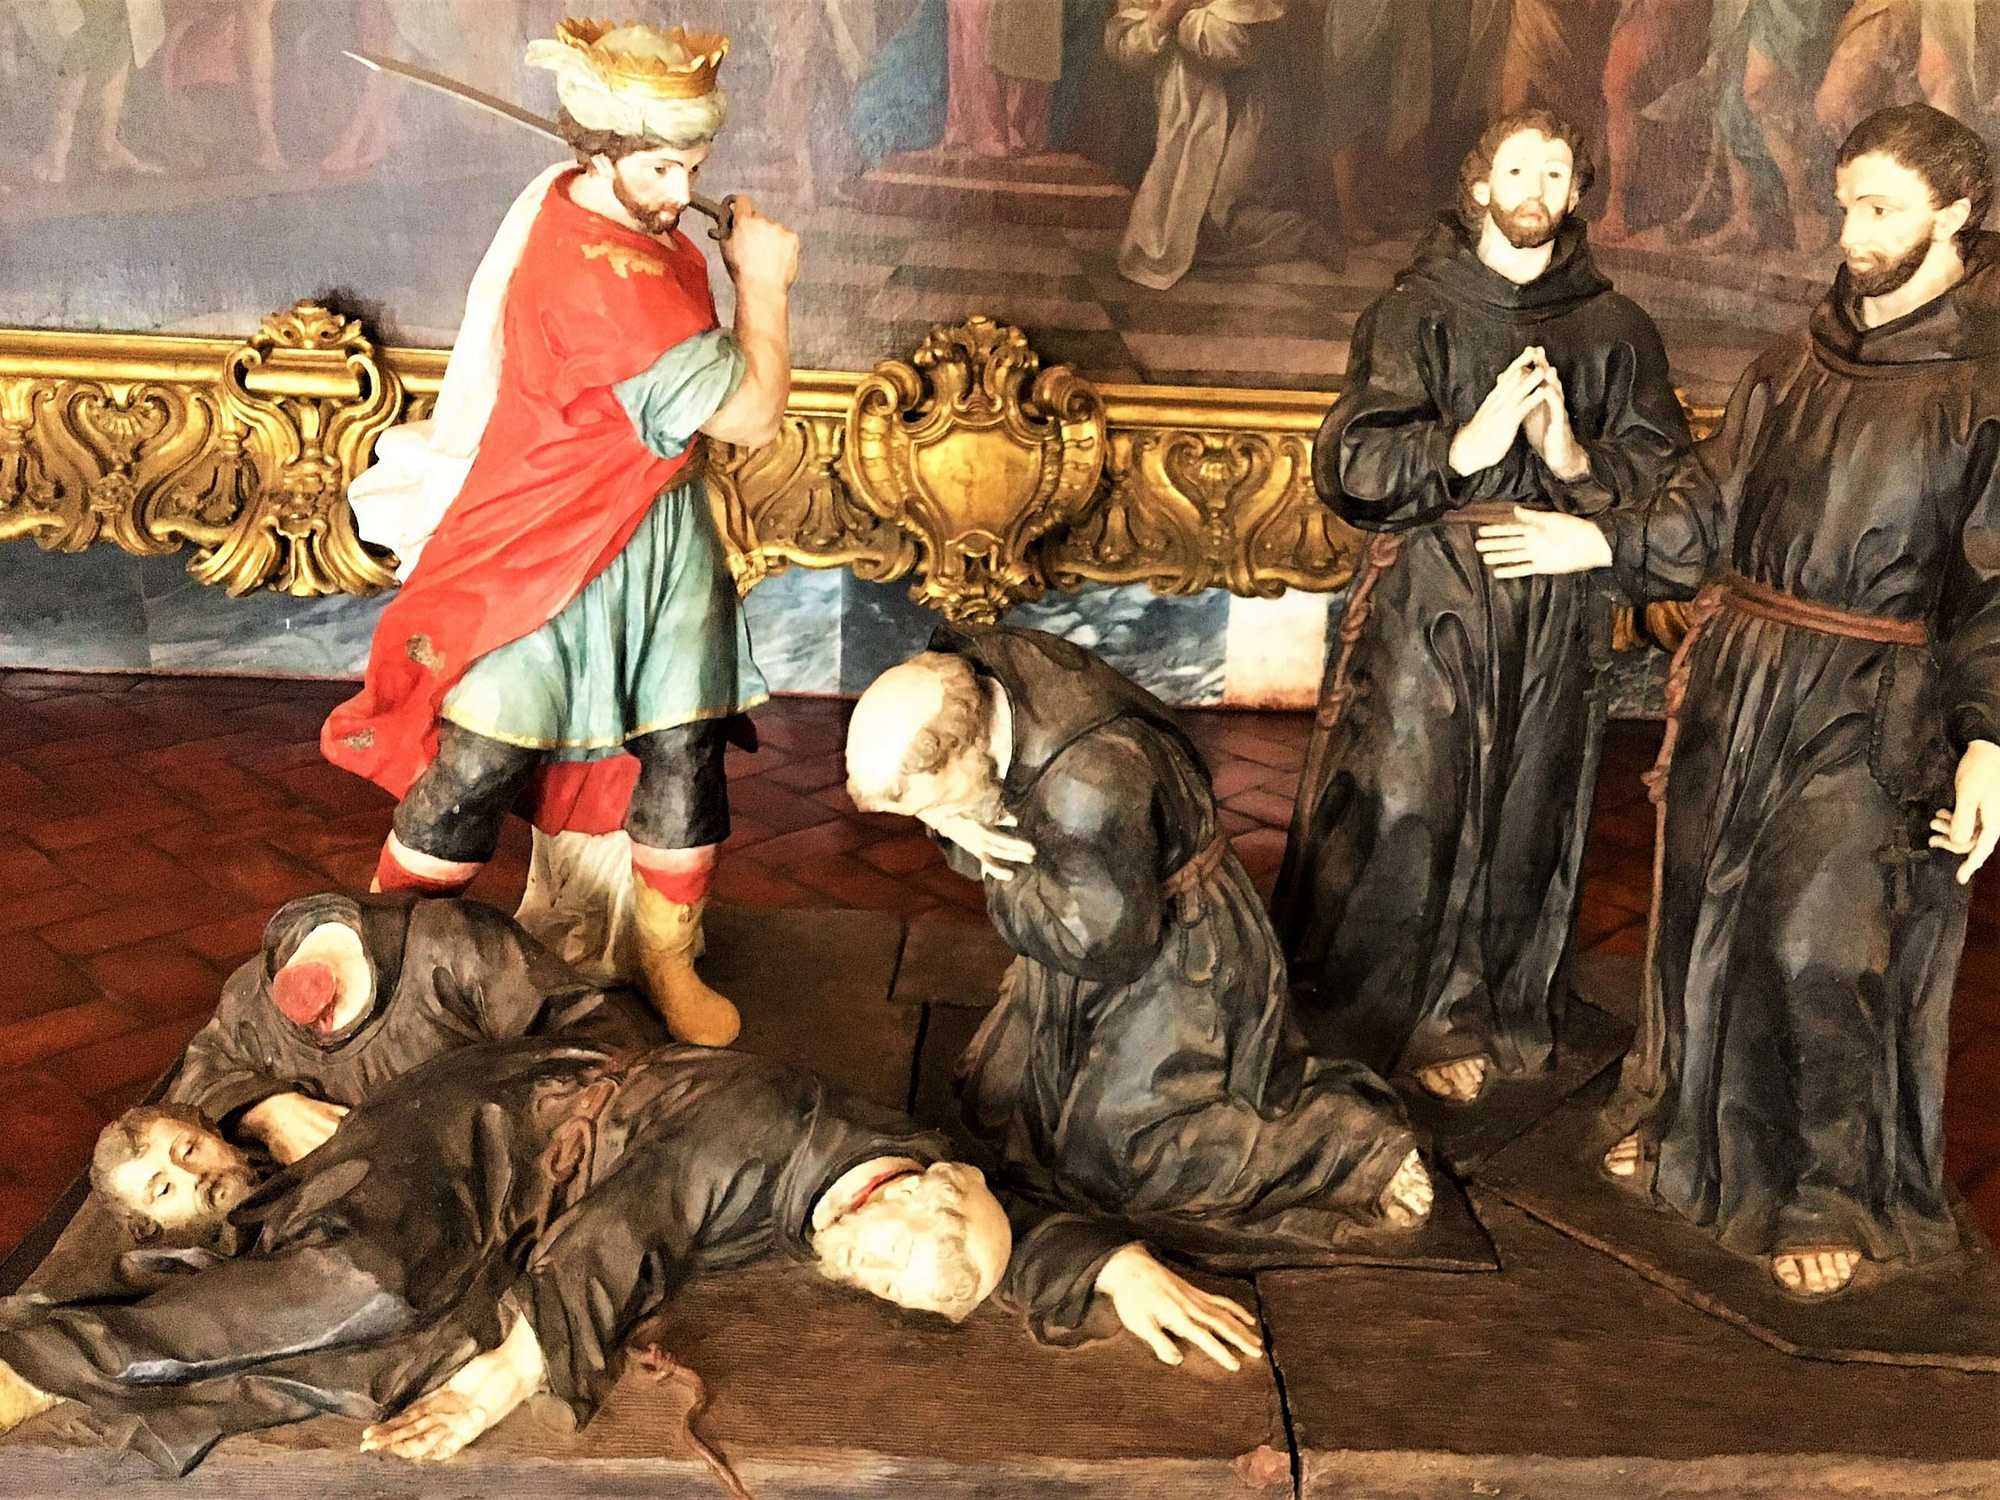 martyrs des franciscains au maroc - saint antoine Lisbonne - palacio de mafra